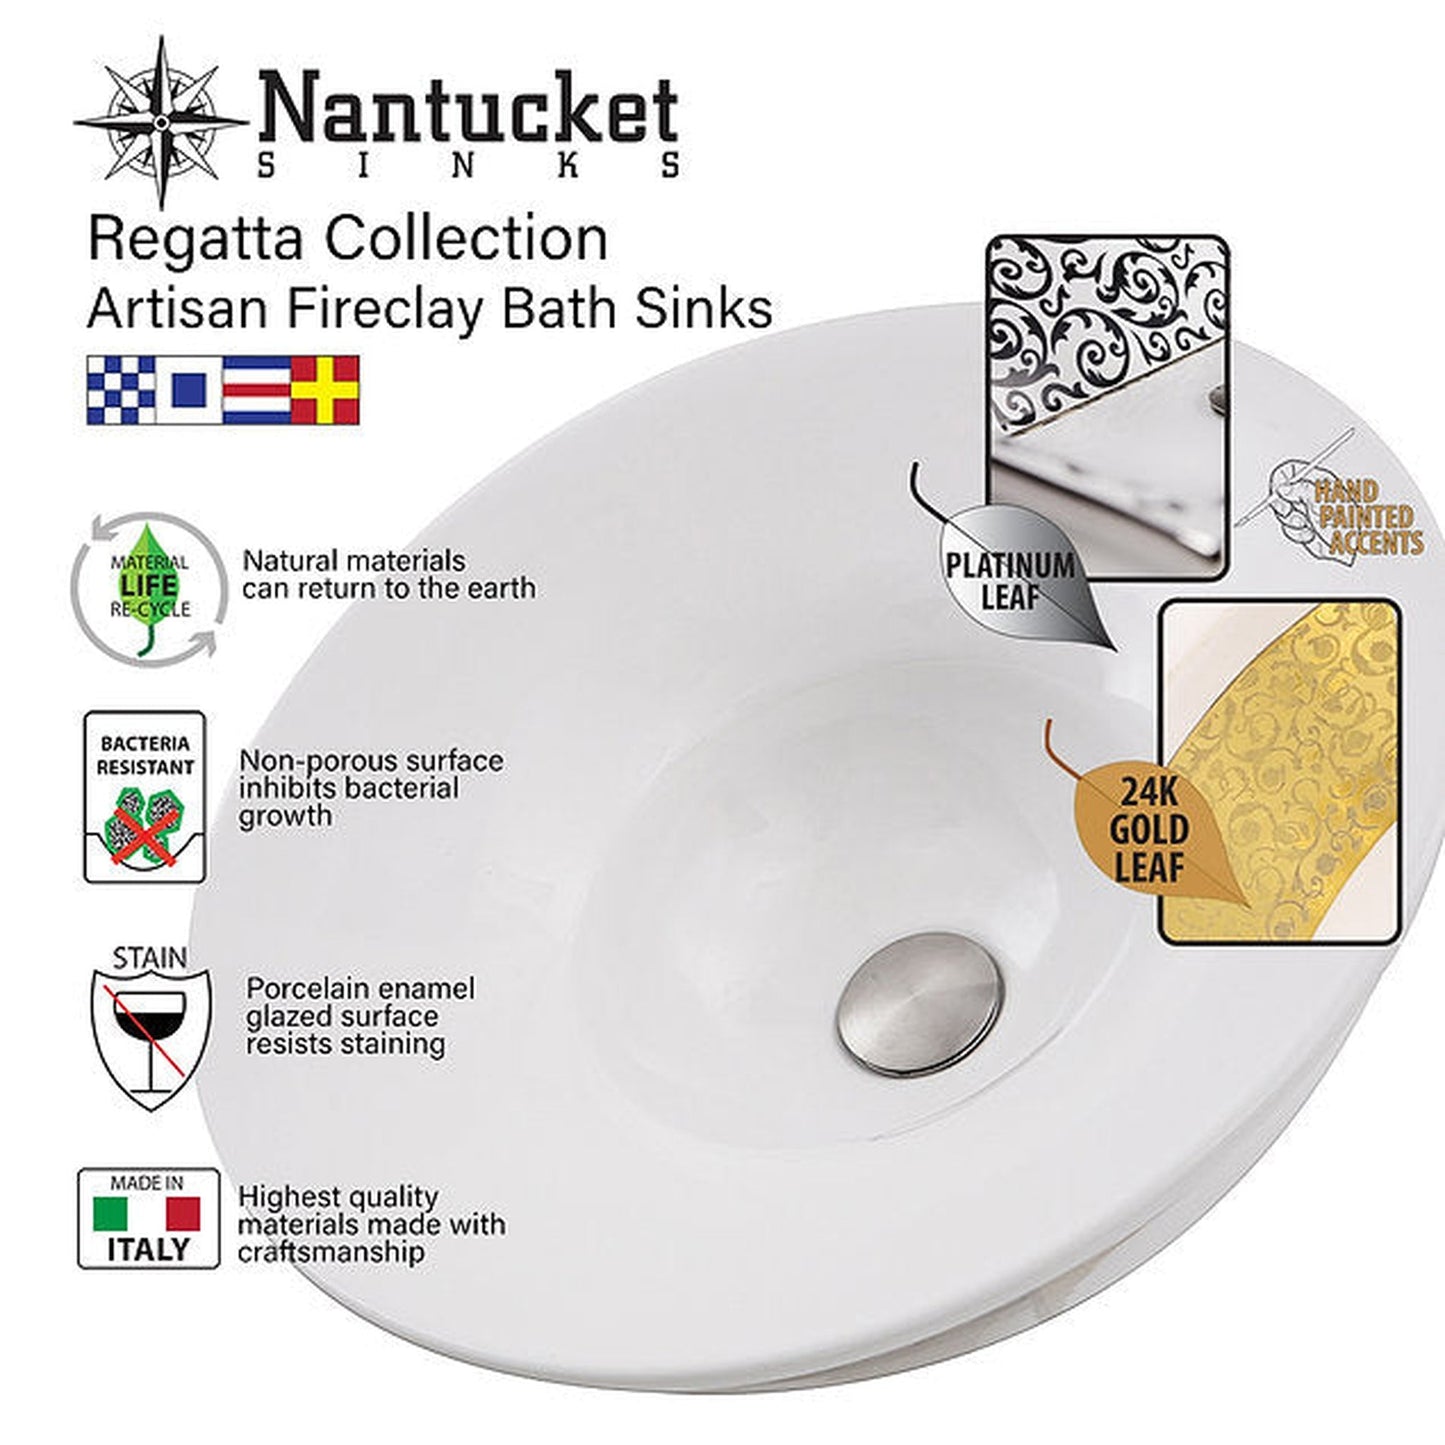 Nantucket Sinks Regatta 17" Round Glazed Matte Black and Gold Drake Fireclay Hand Decorated Vessel Sink